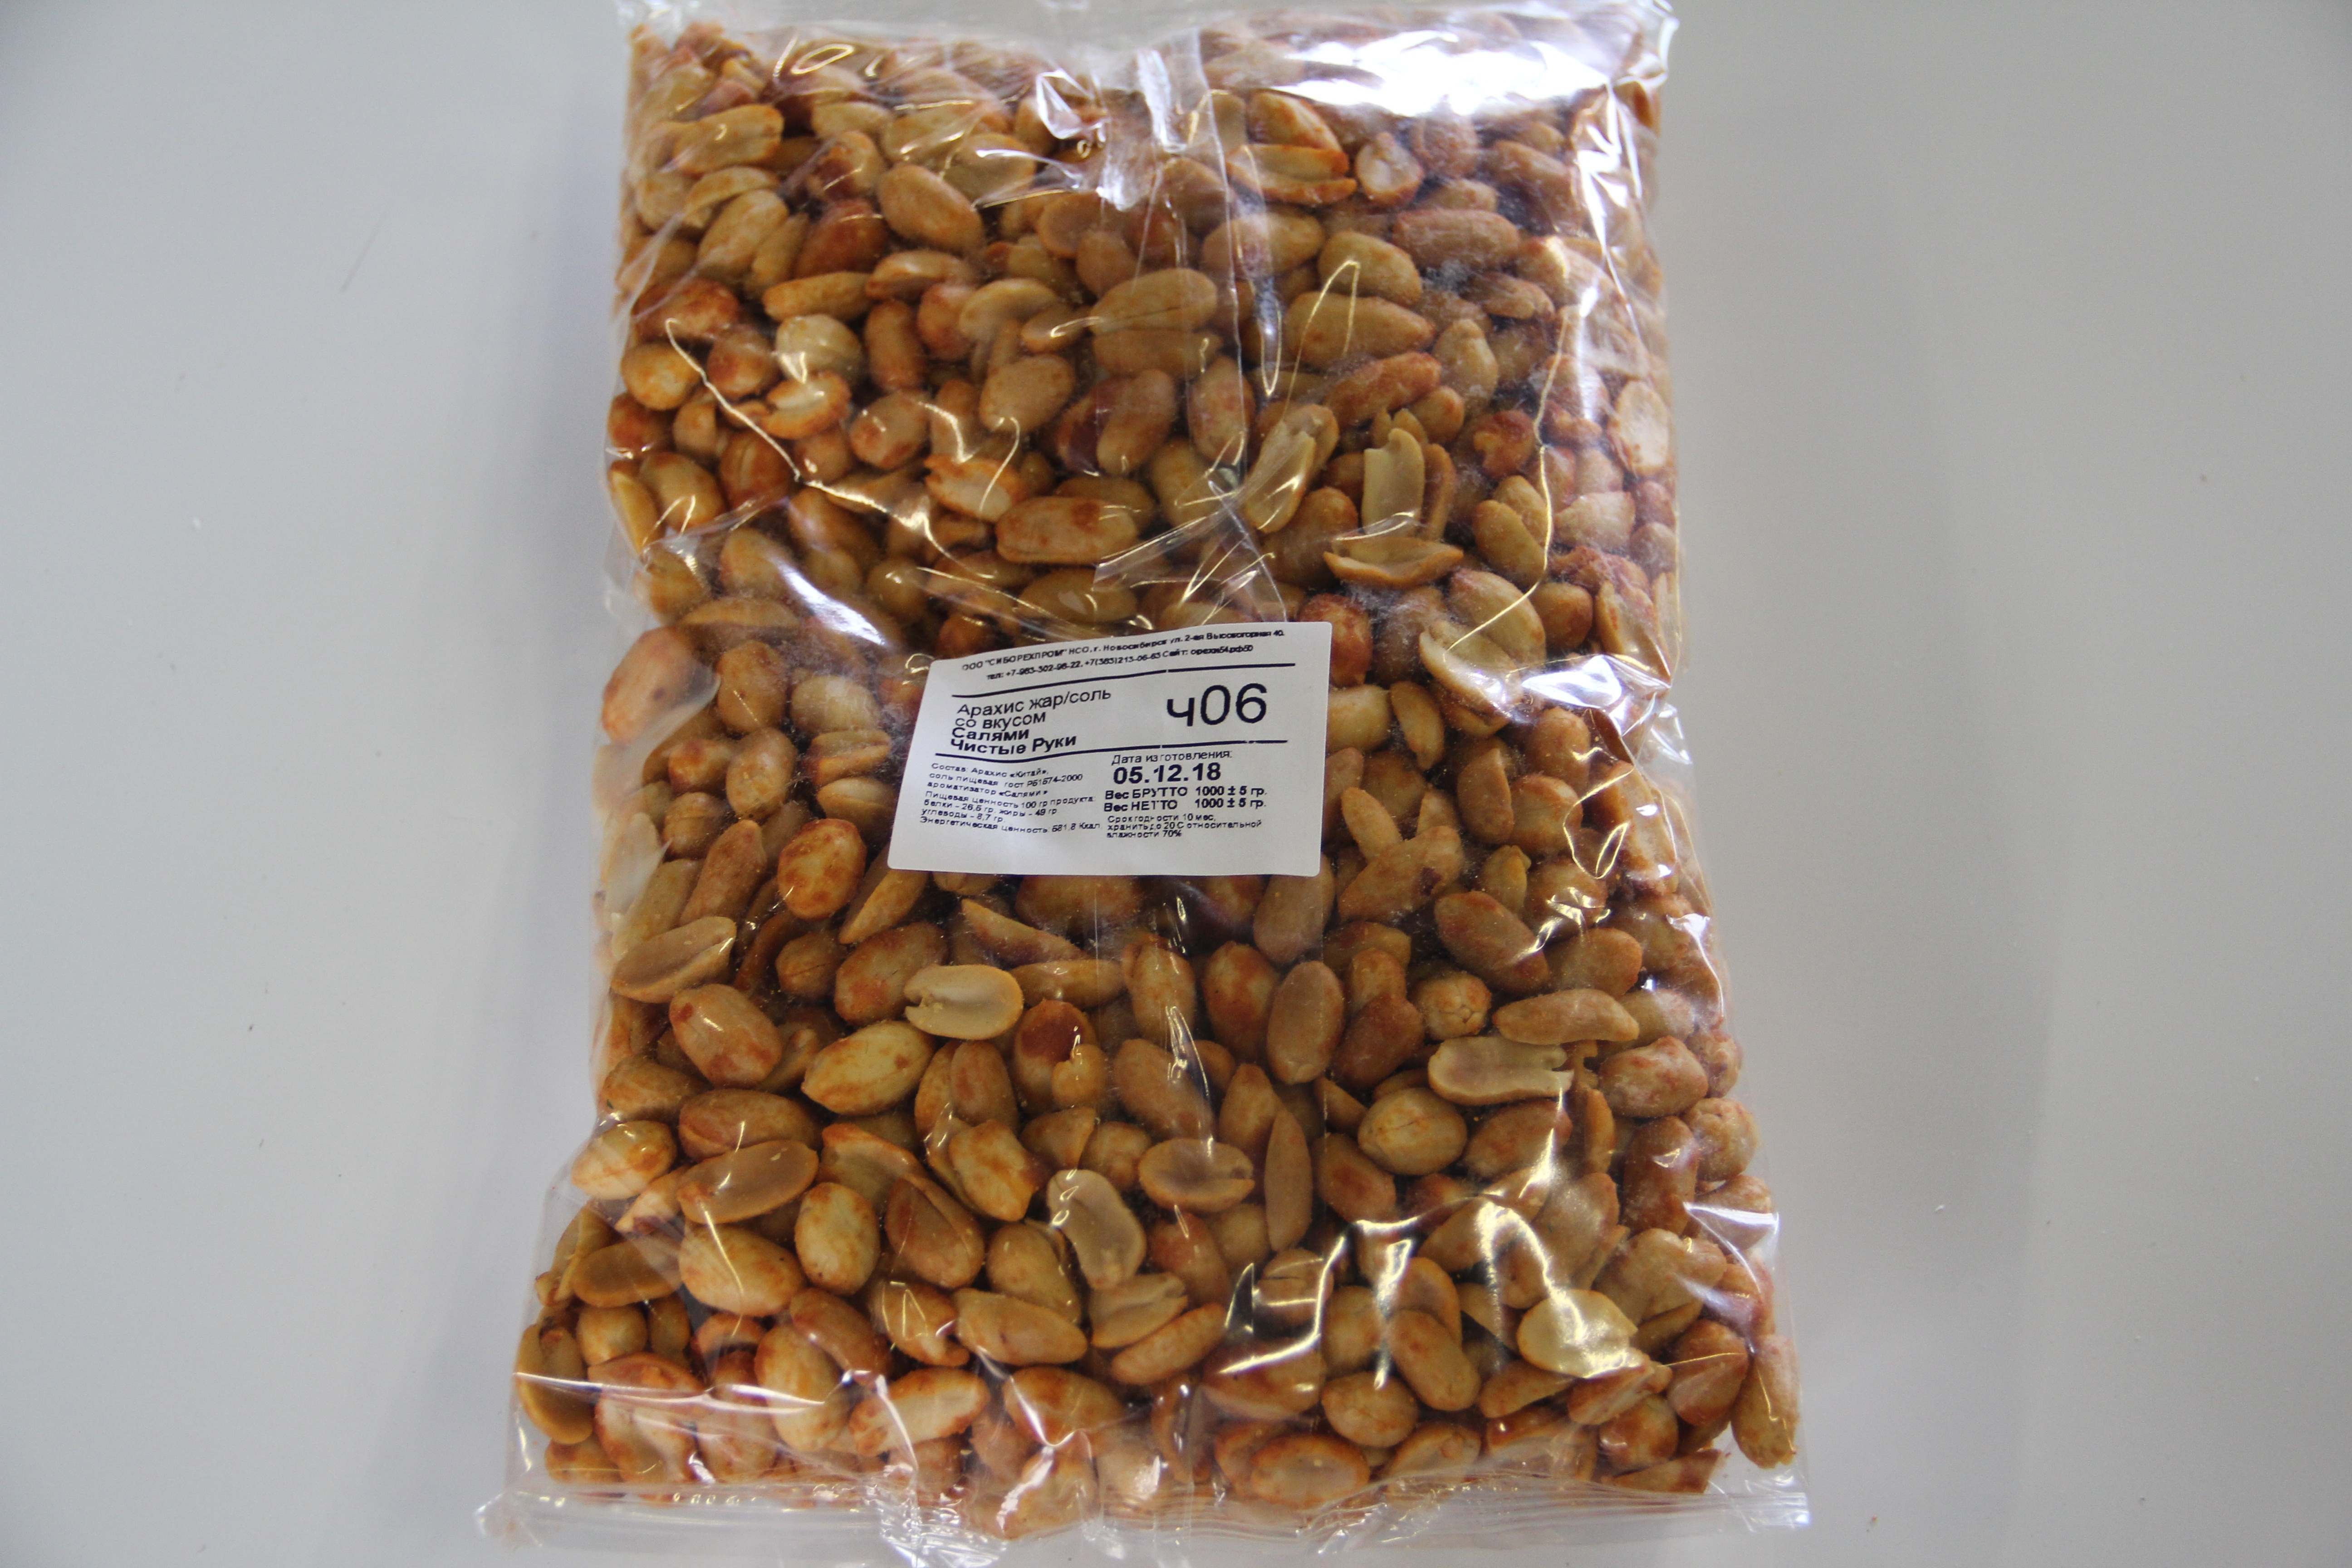 Купить орехи в новосибирске. Арахис весовой. Арахис сушеный. Арахис сушеный в упаковке. Арахис сушеный вес.